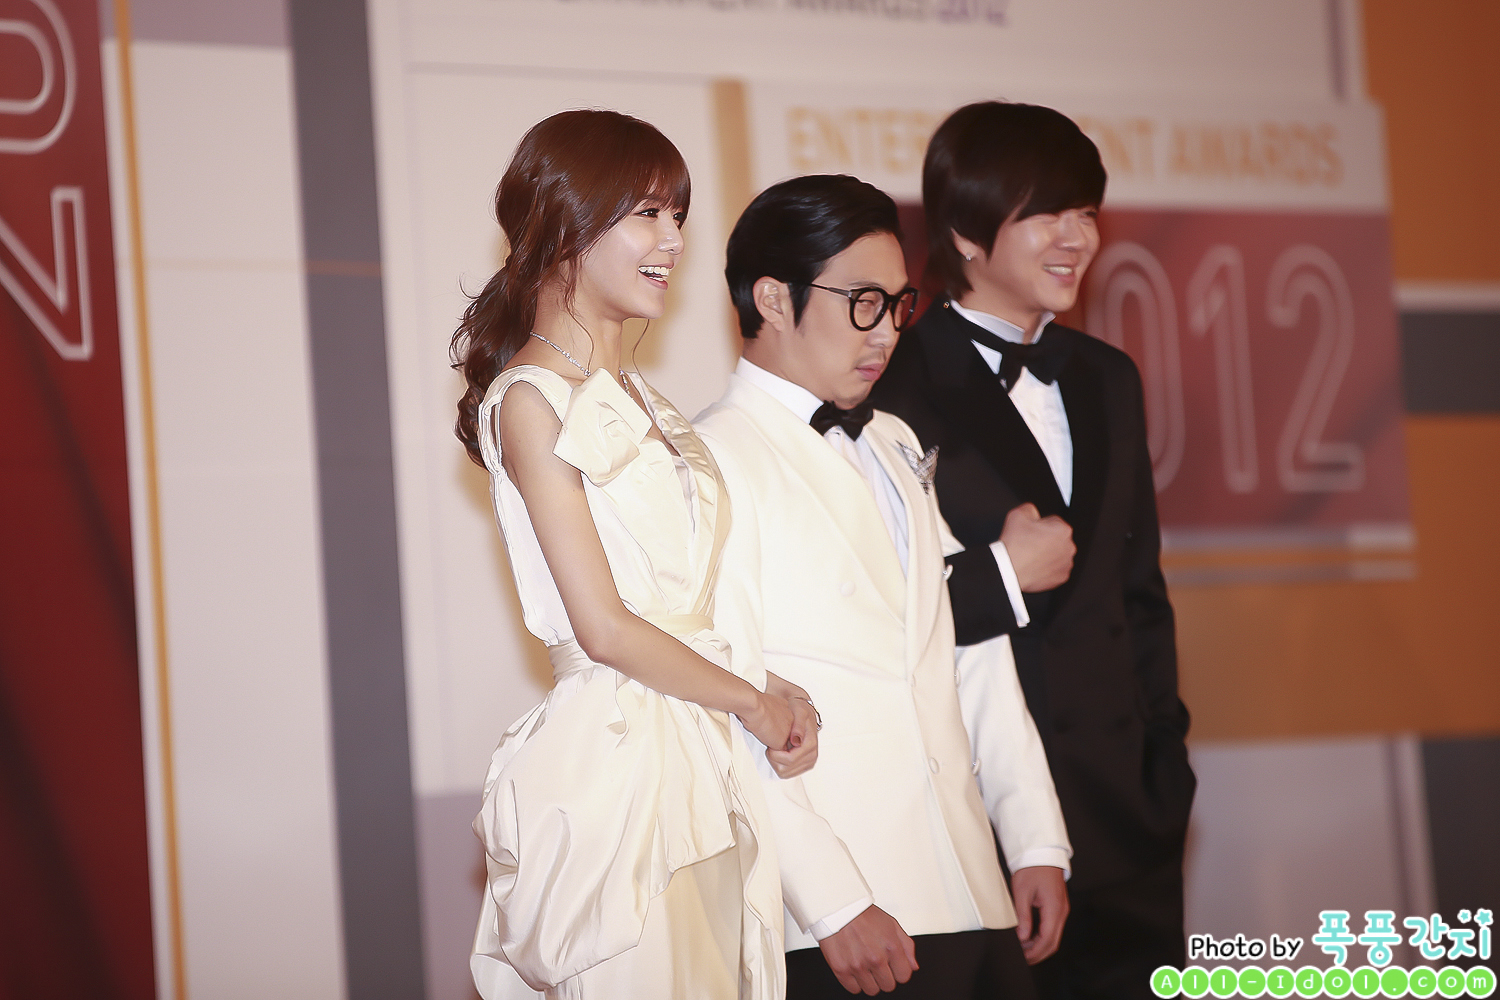 [PIC][30-12-2012]Hình ảnh mới nhất của MC SooYoung tại "2012 SBS Entertainment Awards" tối nay 1442CF4A50E06E64070FF8